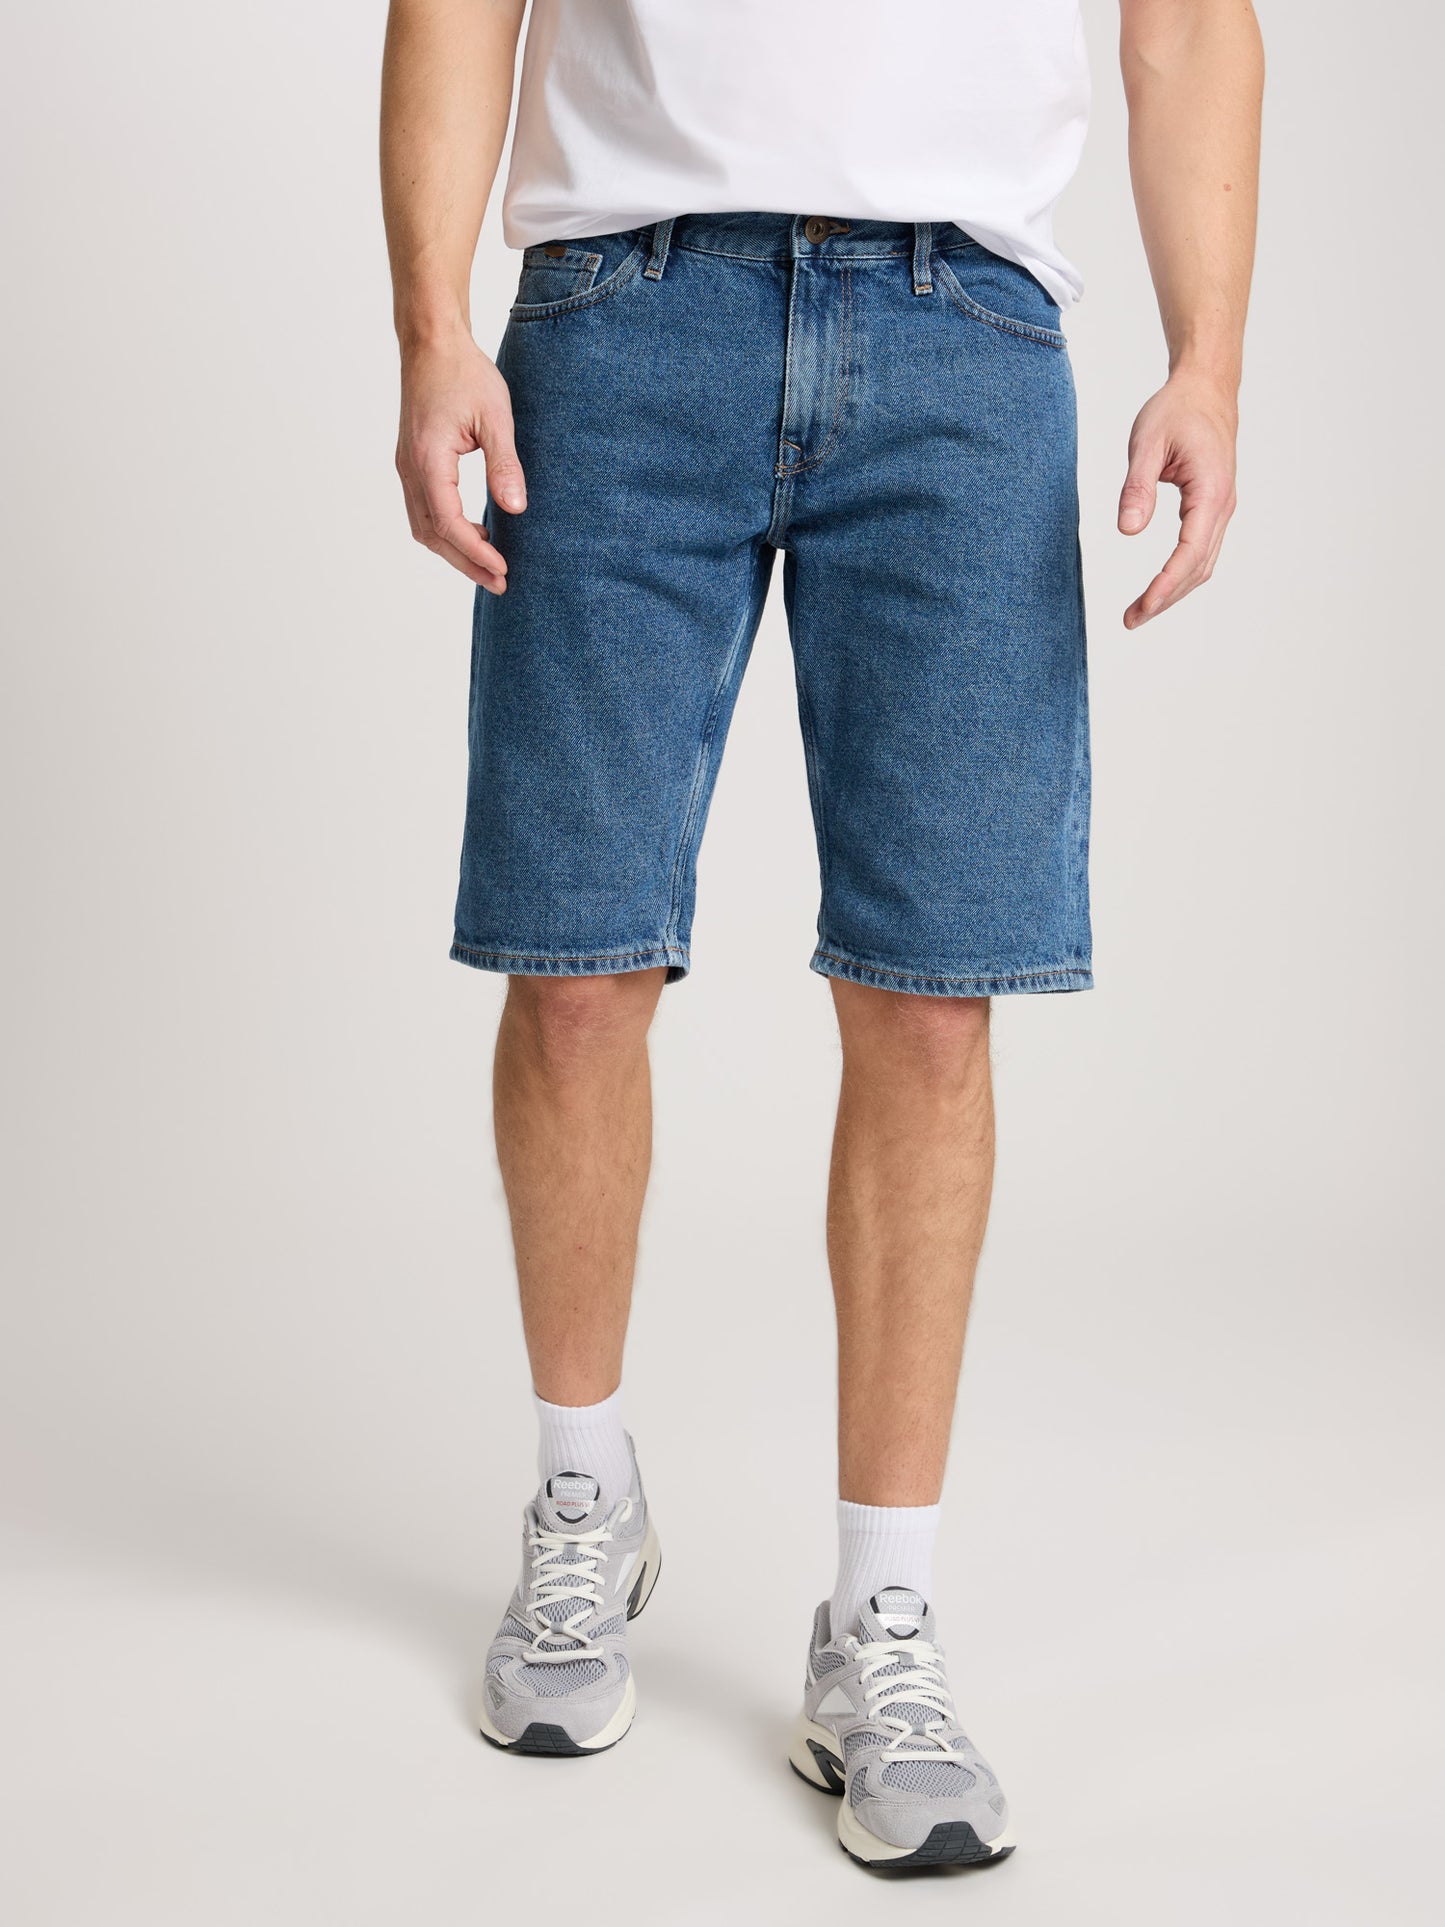 Leom Herren Jeans Regular Shorts mittelblau